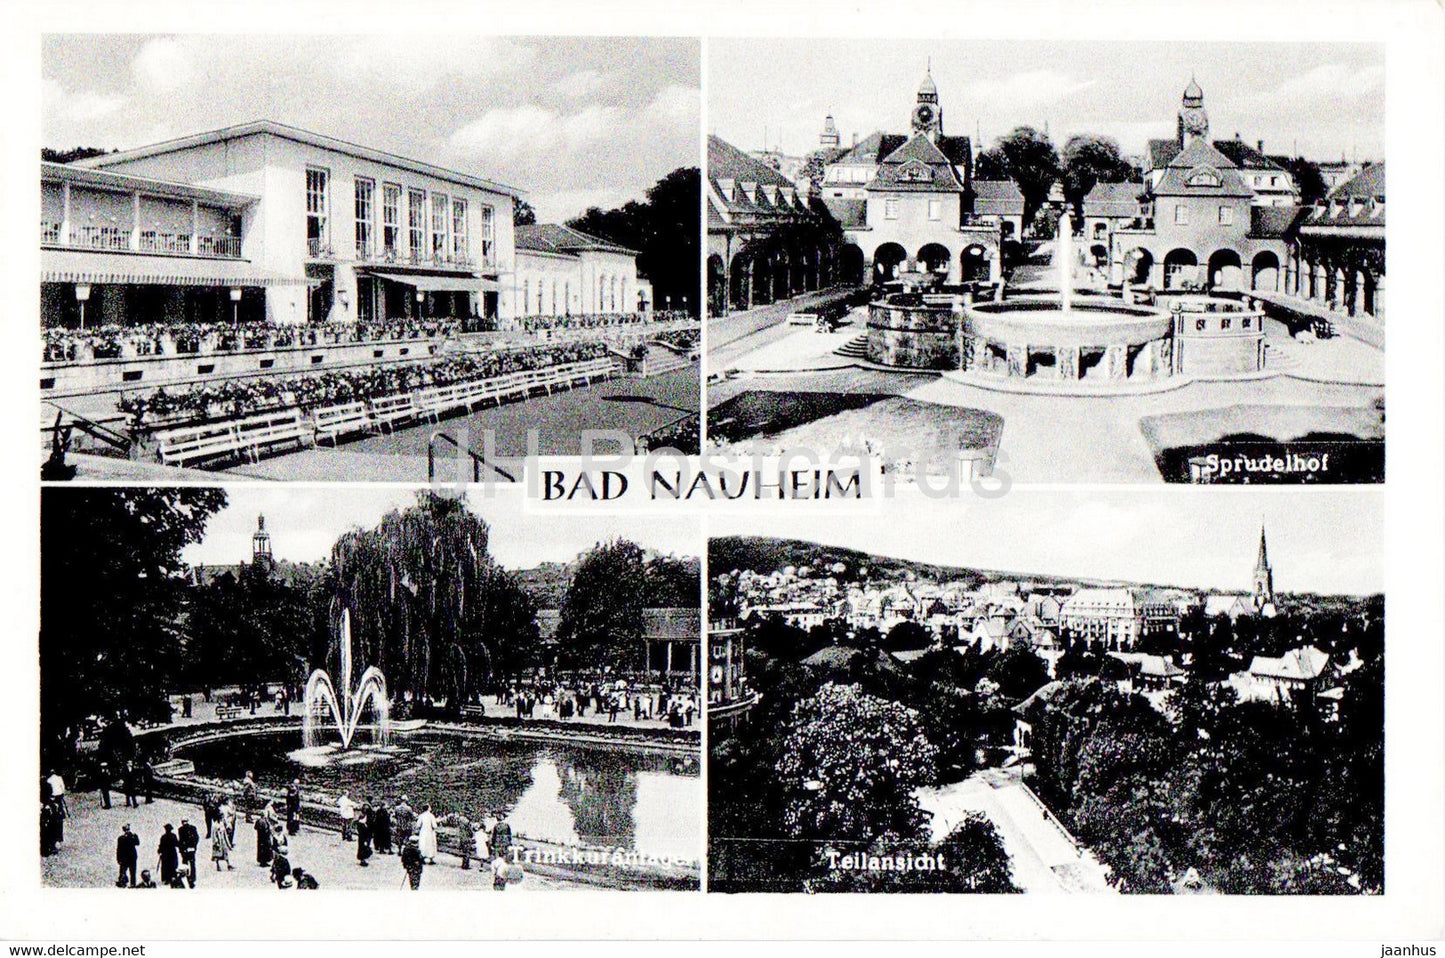 Bad Nauheim - Sprudelhof - old postcard - 1959 - Germany - used - JH Postcards